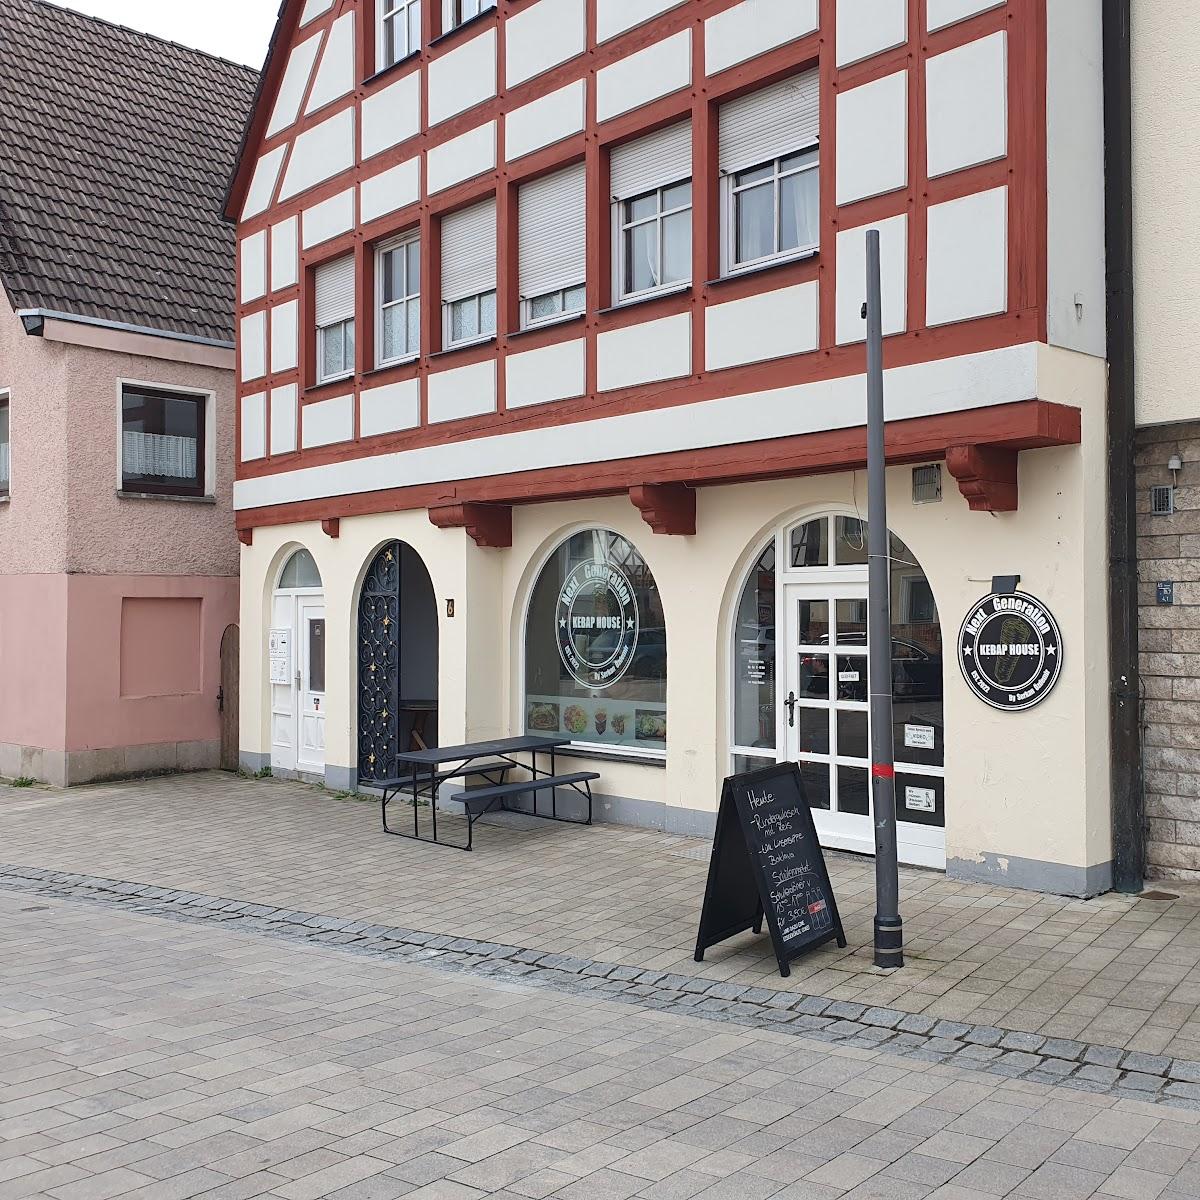 Restaurant "Next Generation Kebap House" in Schnaittach